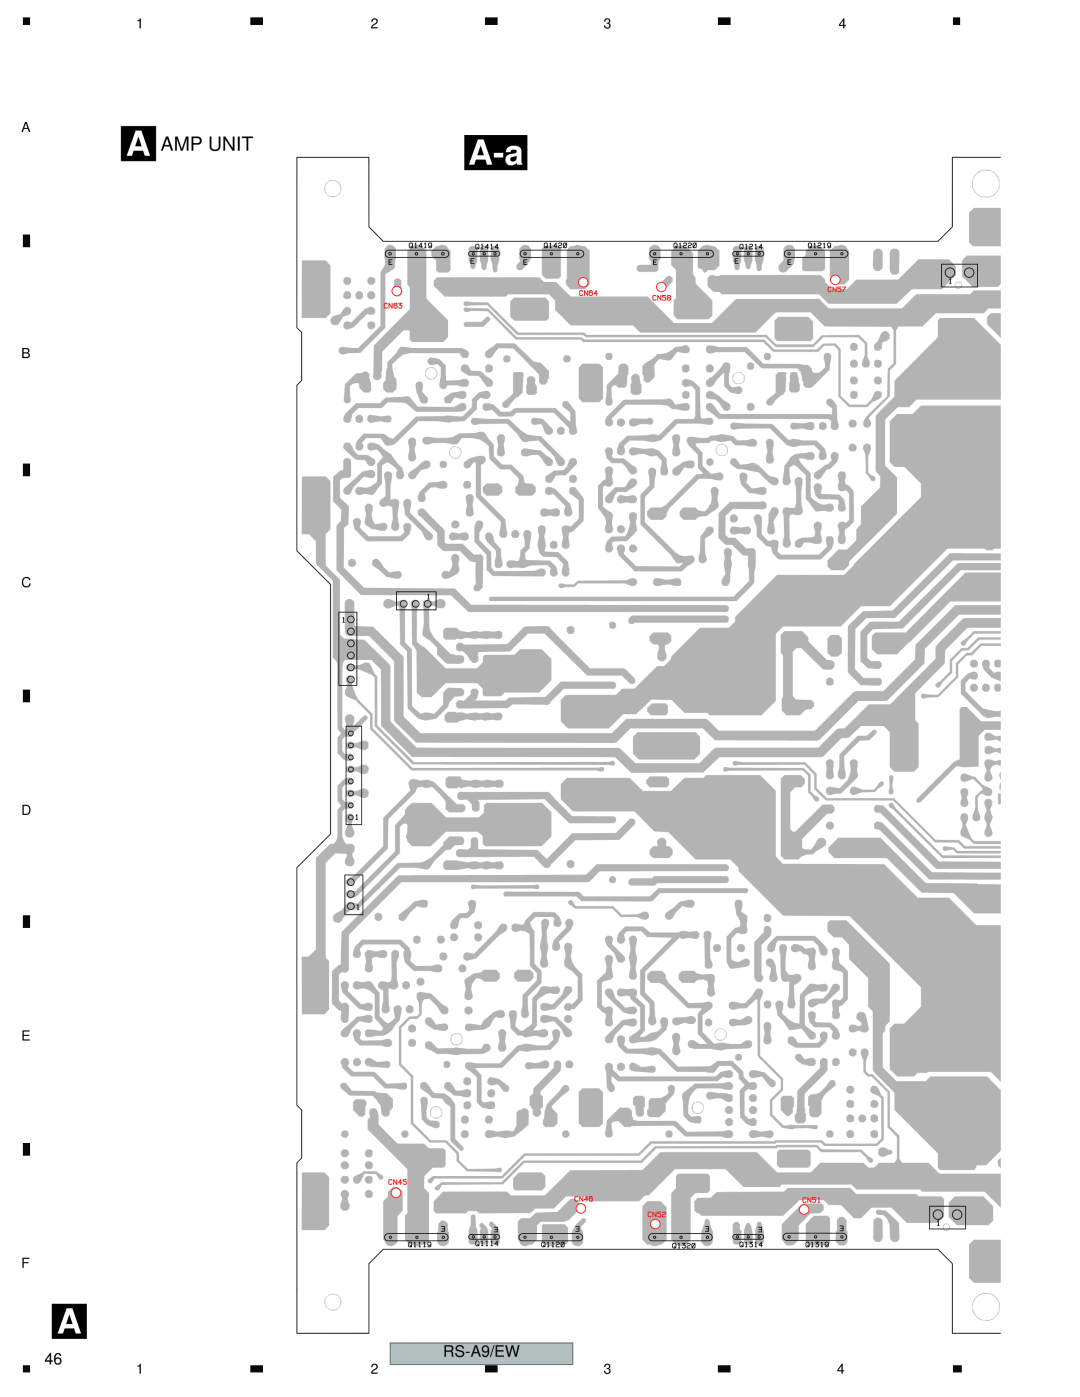 Pioneer RS-A9/EW manual A Amp Unit, C D E F 